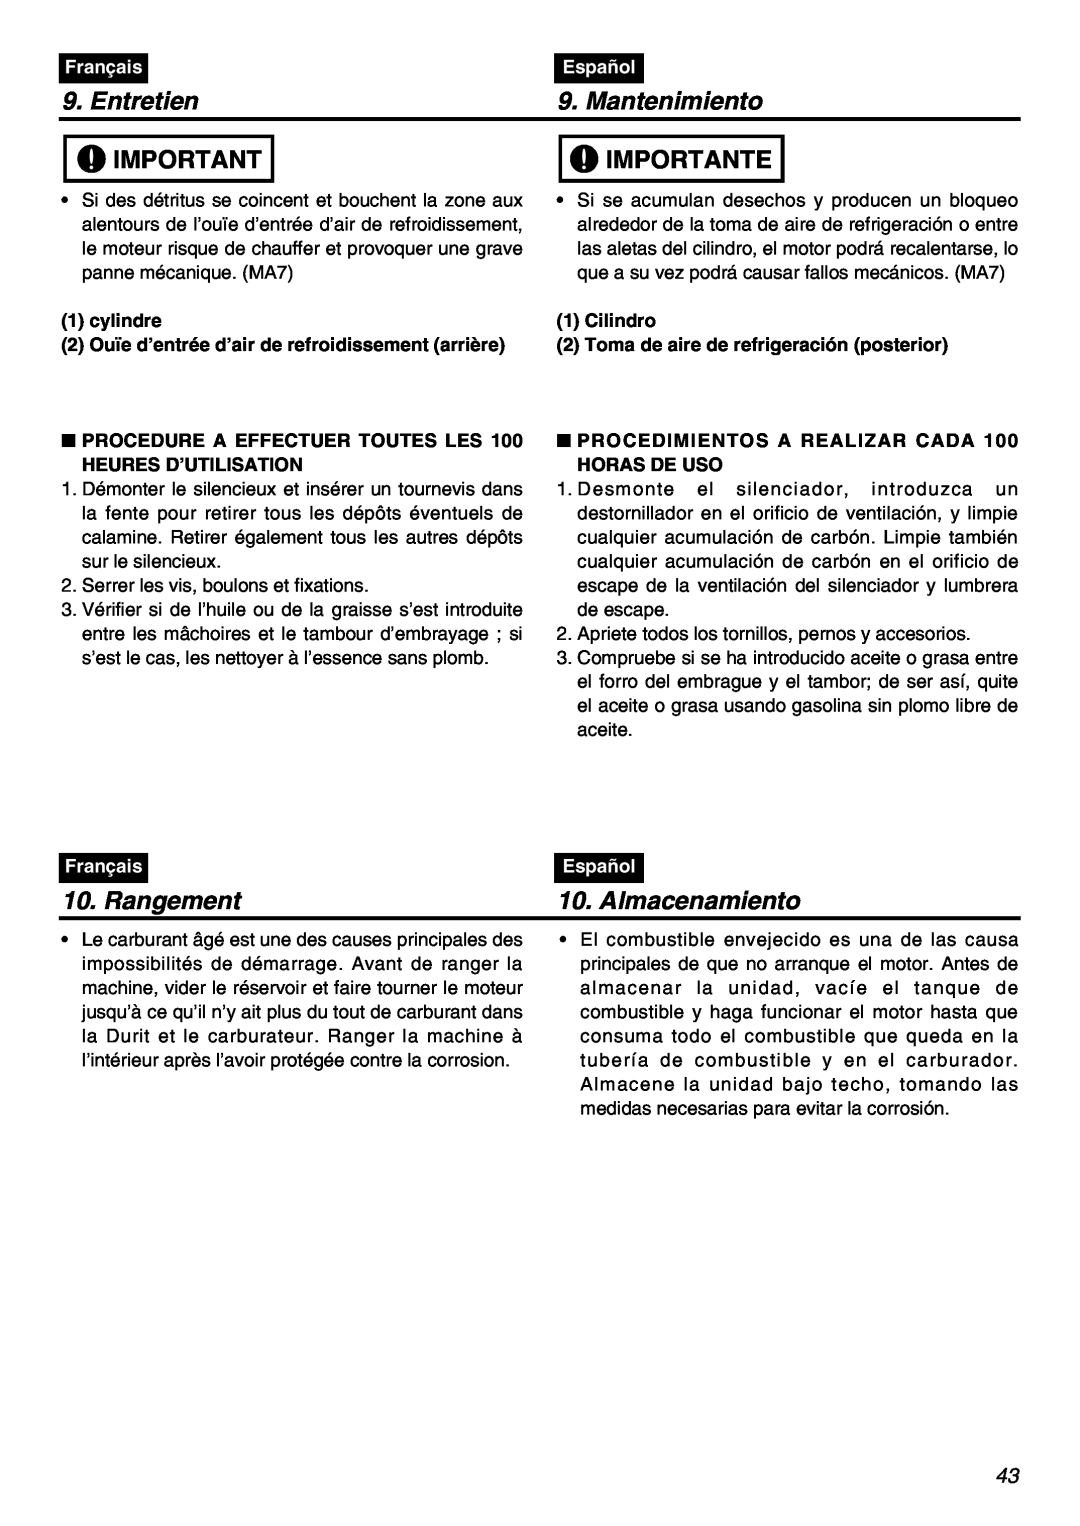 RedMax SRTZ2401F manual Rangement, Almacenamiento, Entretien, Mantenimiento, Importante, Français, Español 